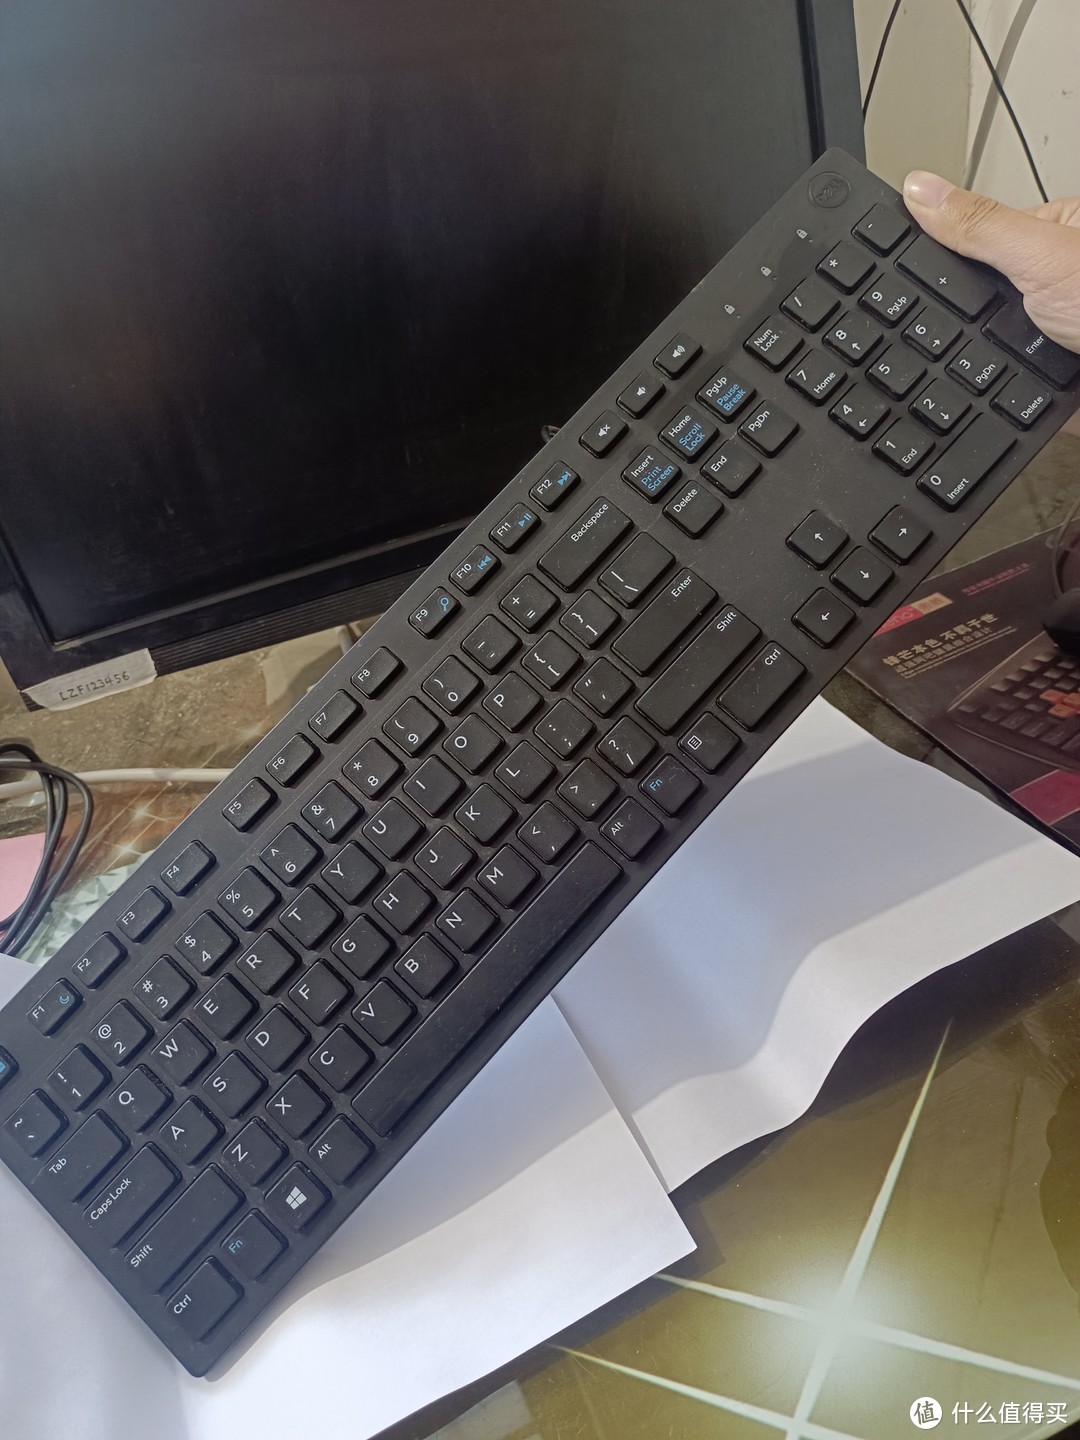 网购的黑色电脑键盘，反应灵敏简约大气，物有所值